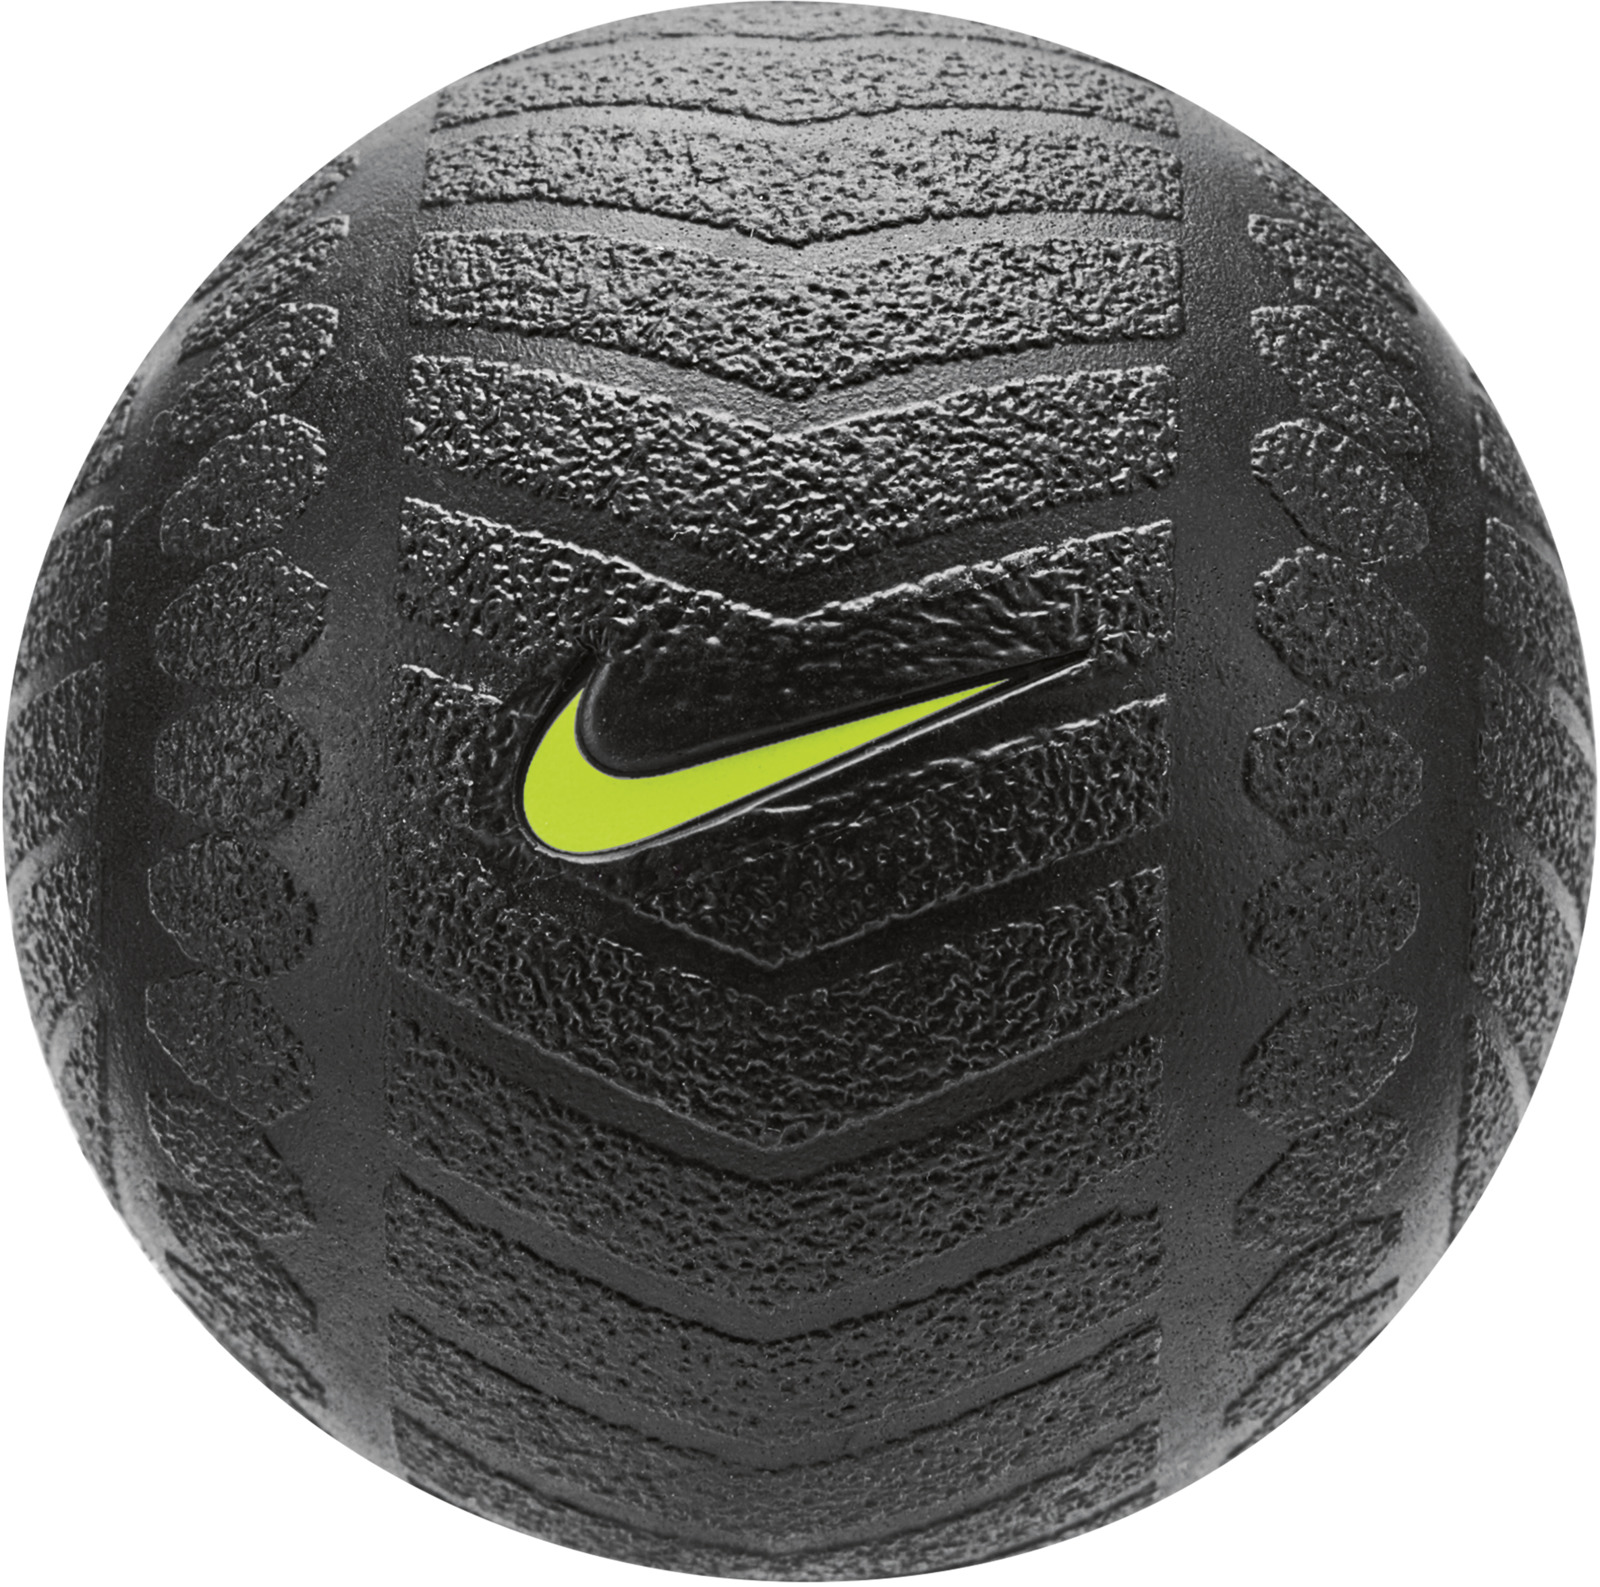 Мяч массажный Nike, цвет: черный, желтый